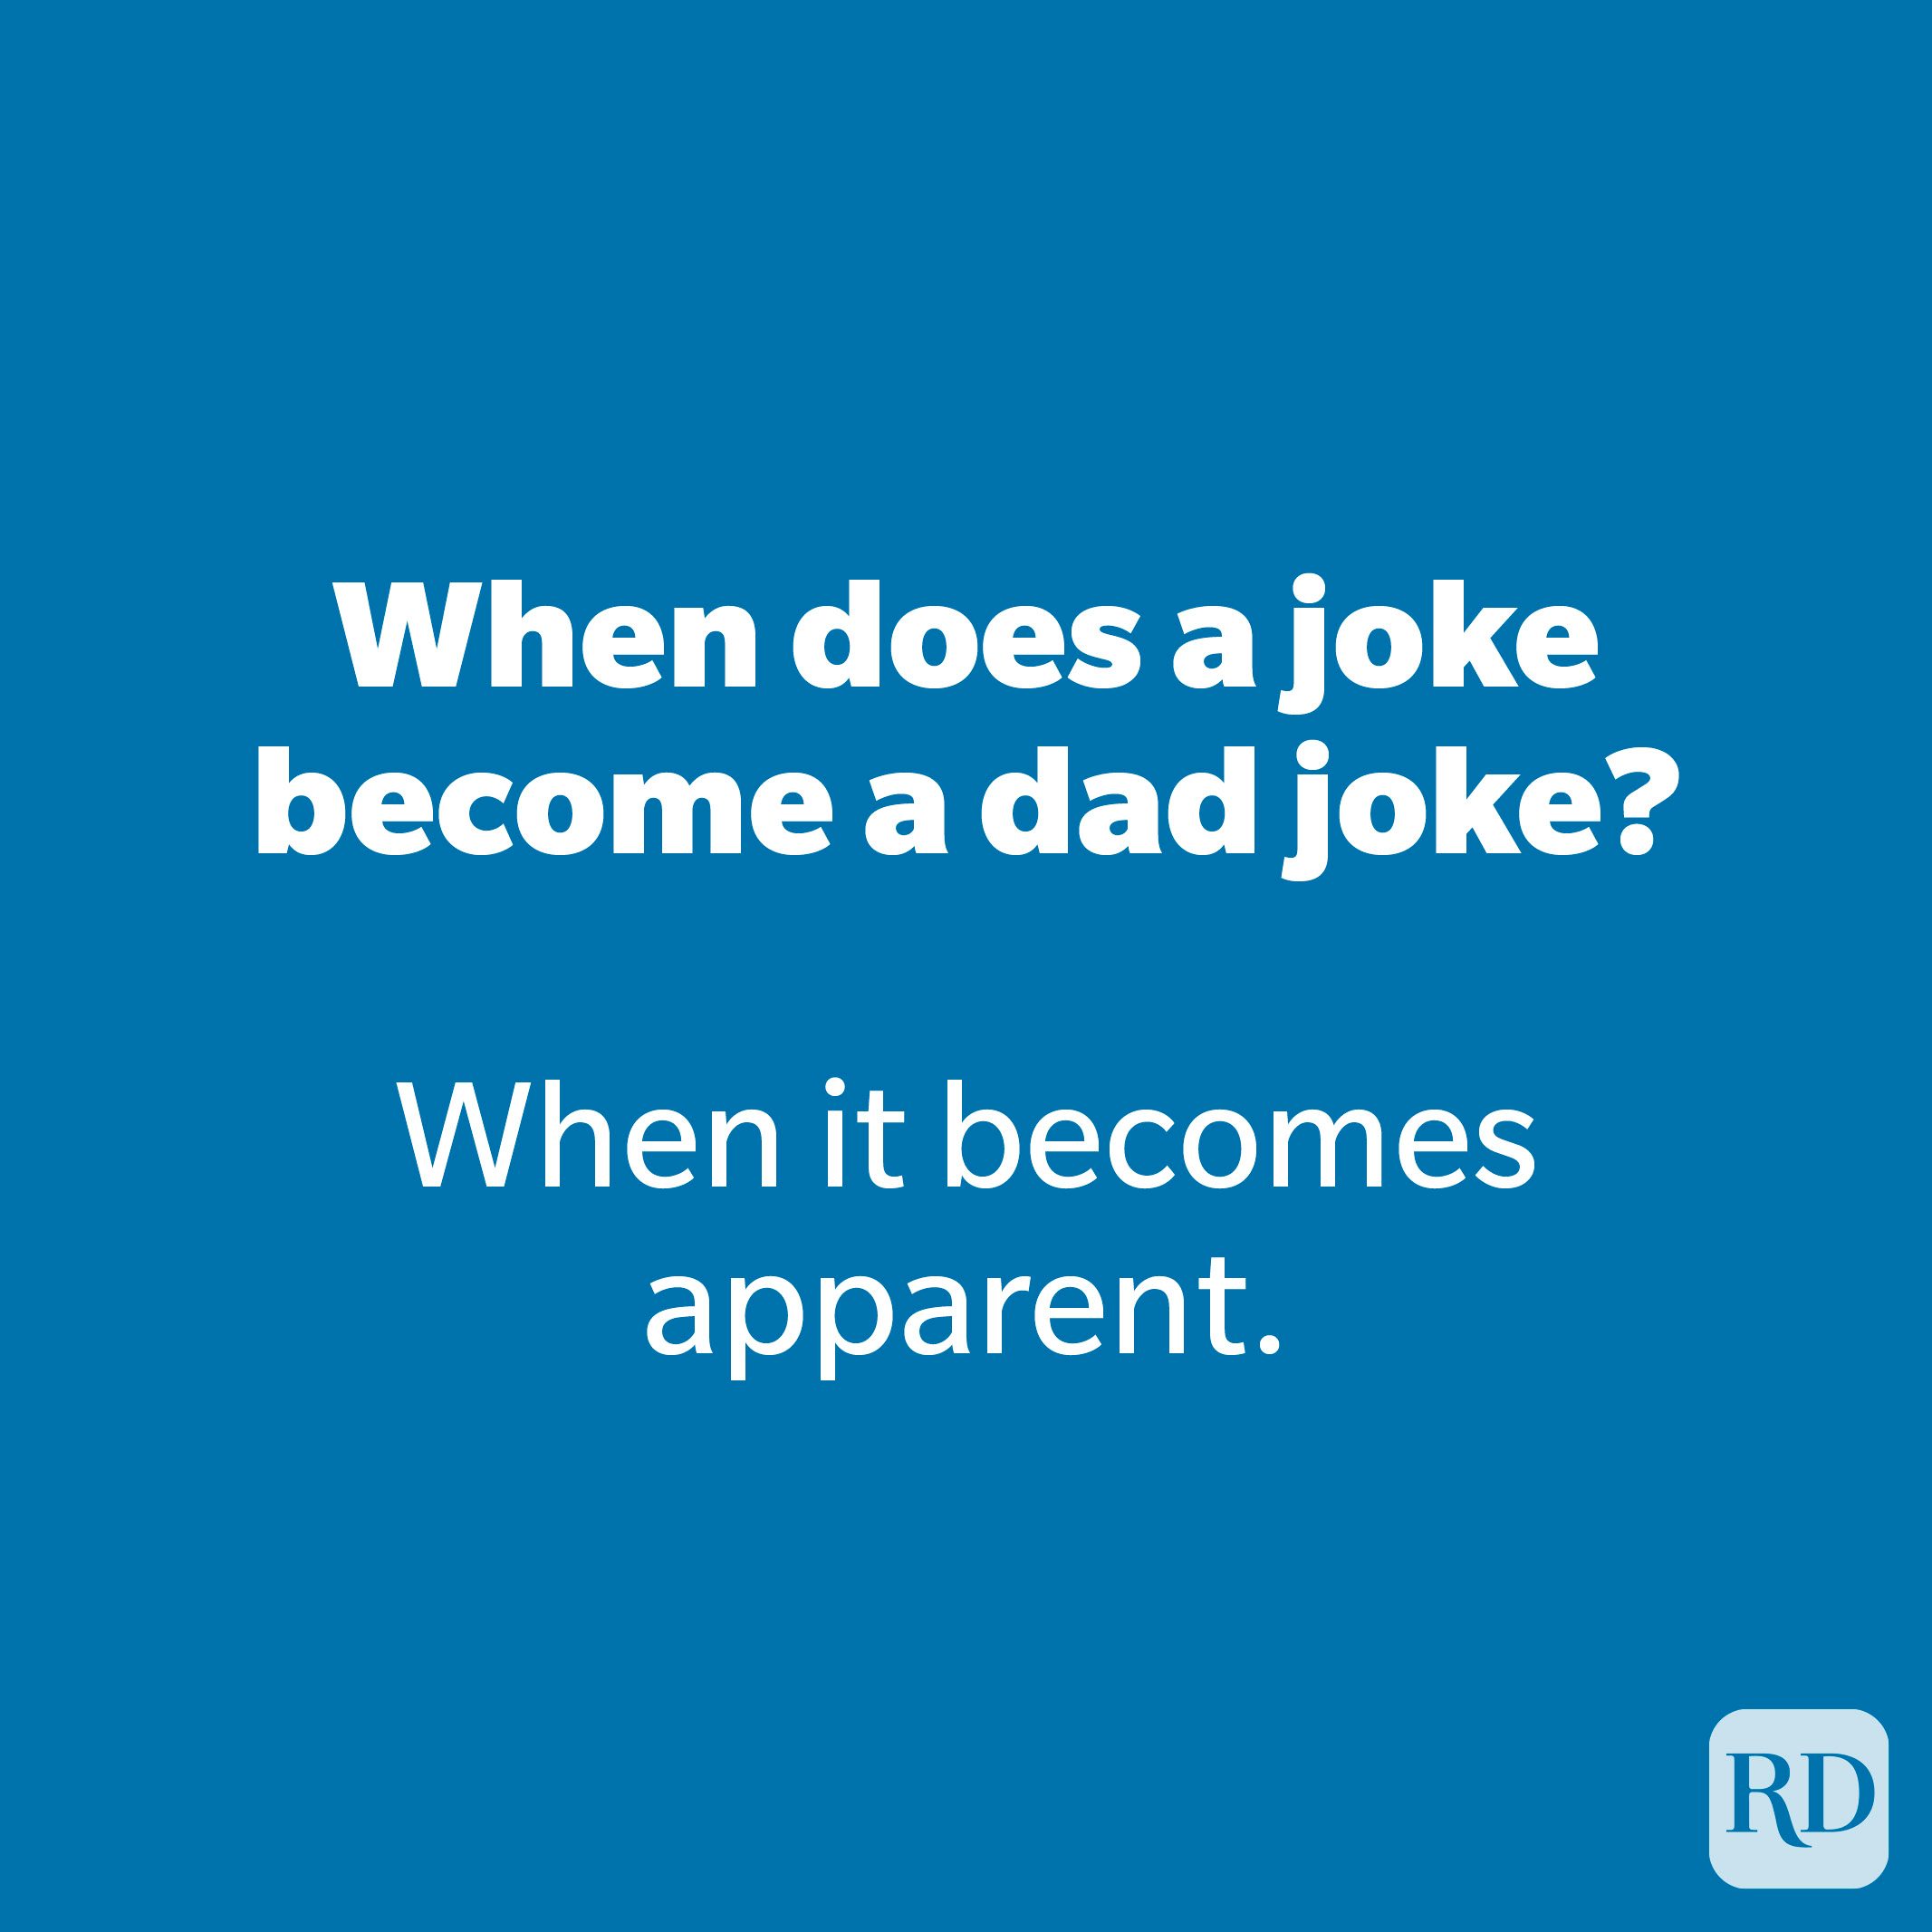 When does a joke become a dad joke? 